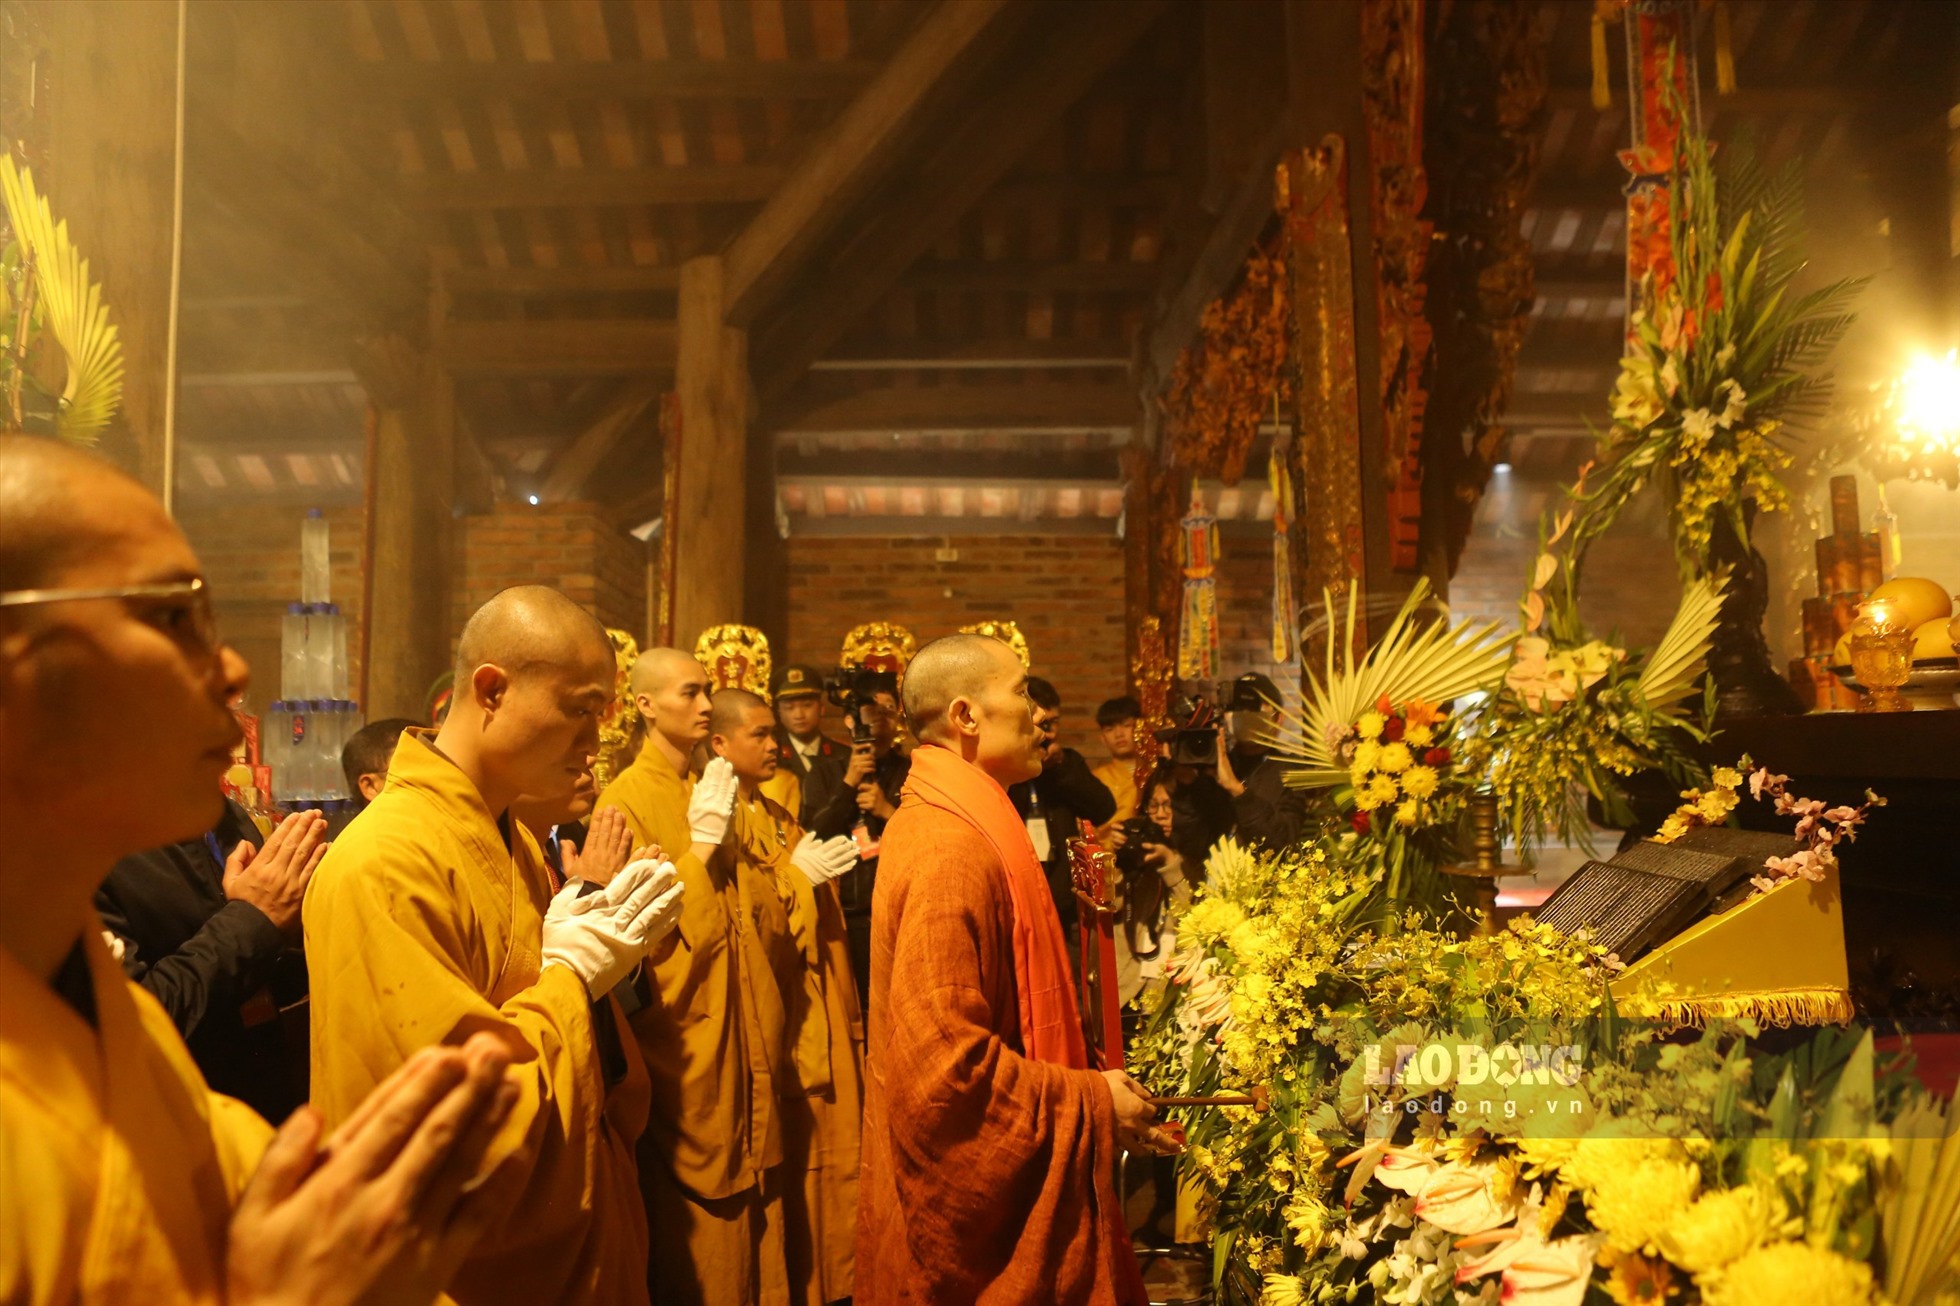 Sau khi Bộ Mộc bản Cư Trần lạc đạo phú đã an vị tại chùa Thượng, các tăng ni Phật tử thực hiện nghi lễ bái tổ trong chùa Thượng. ảnh: Nguyễn Kế